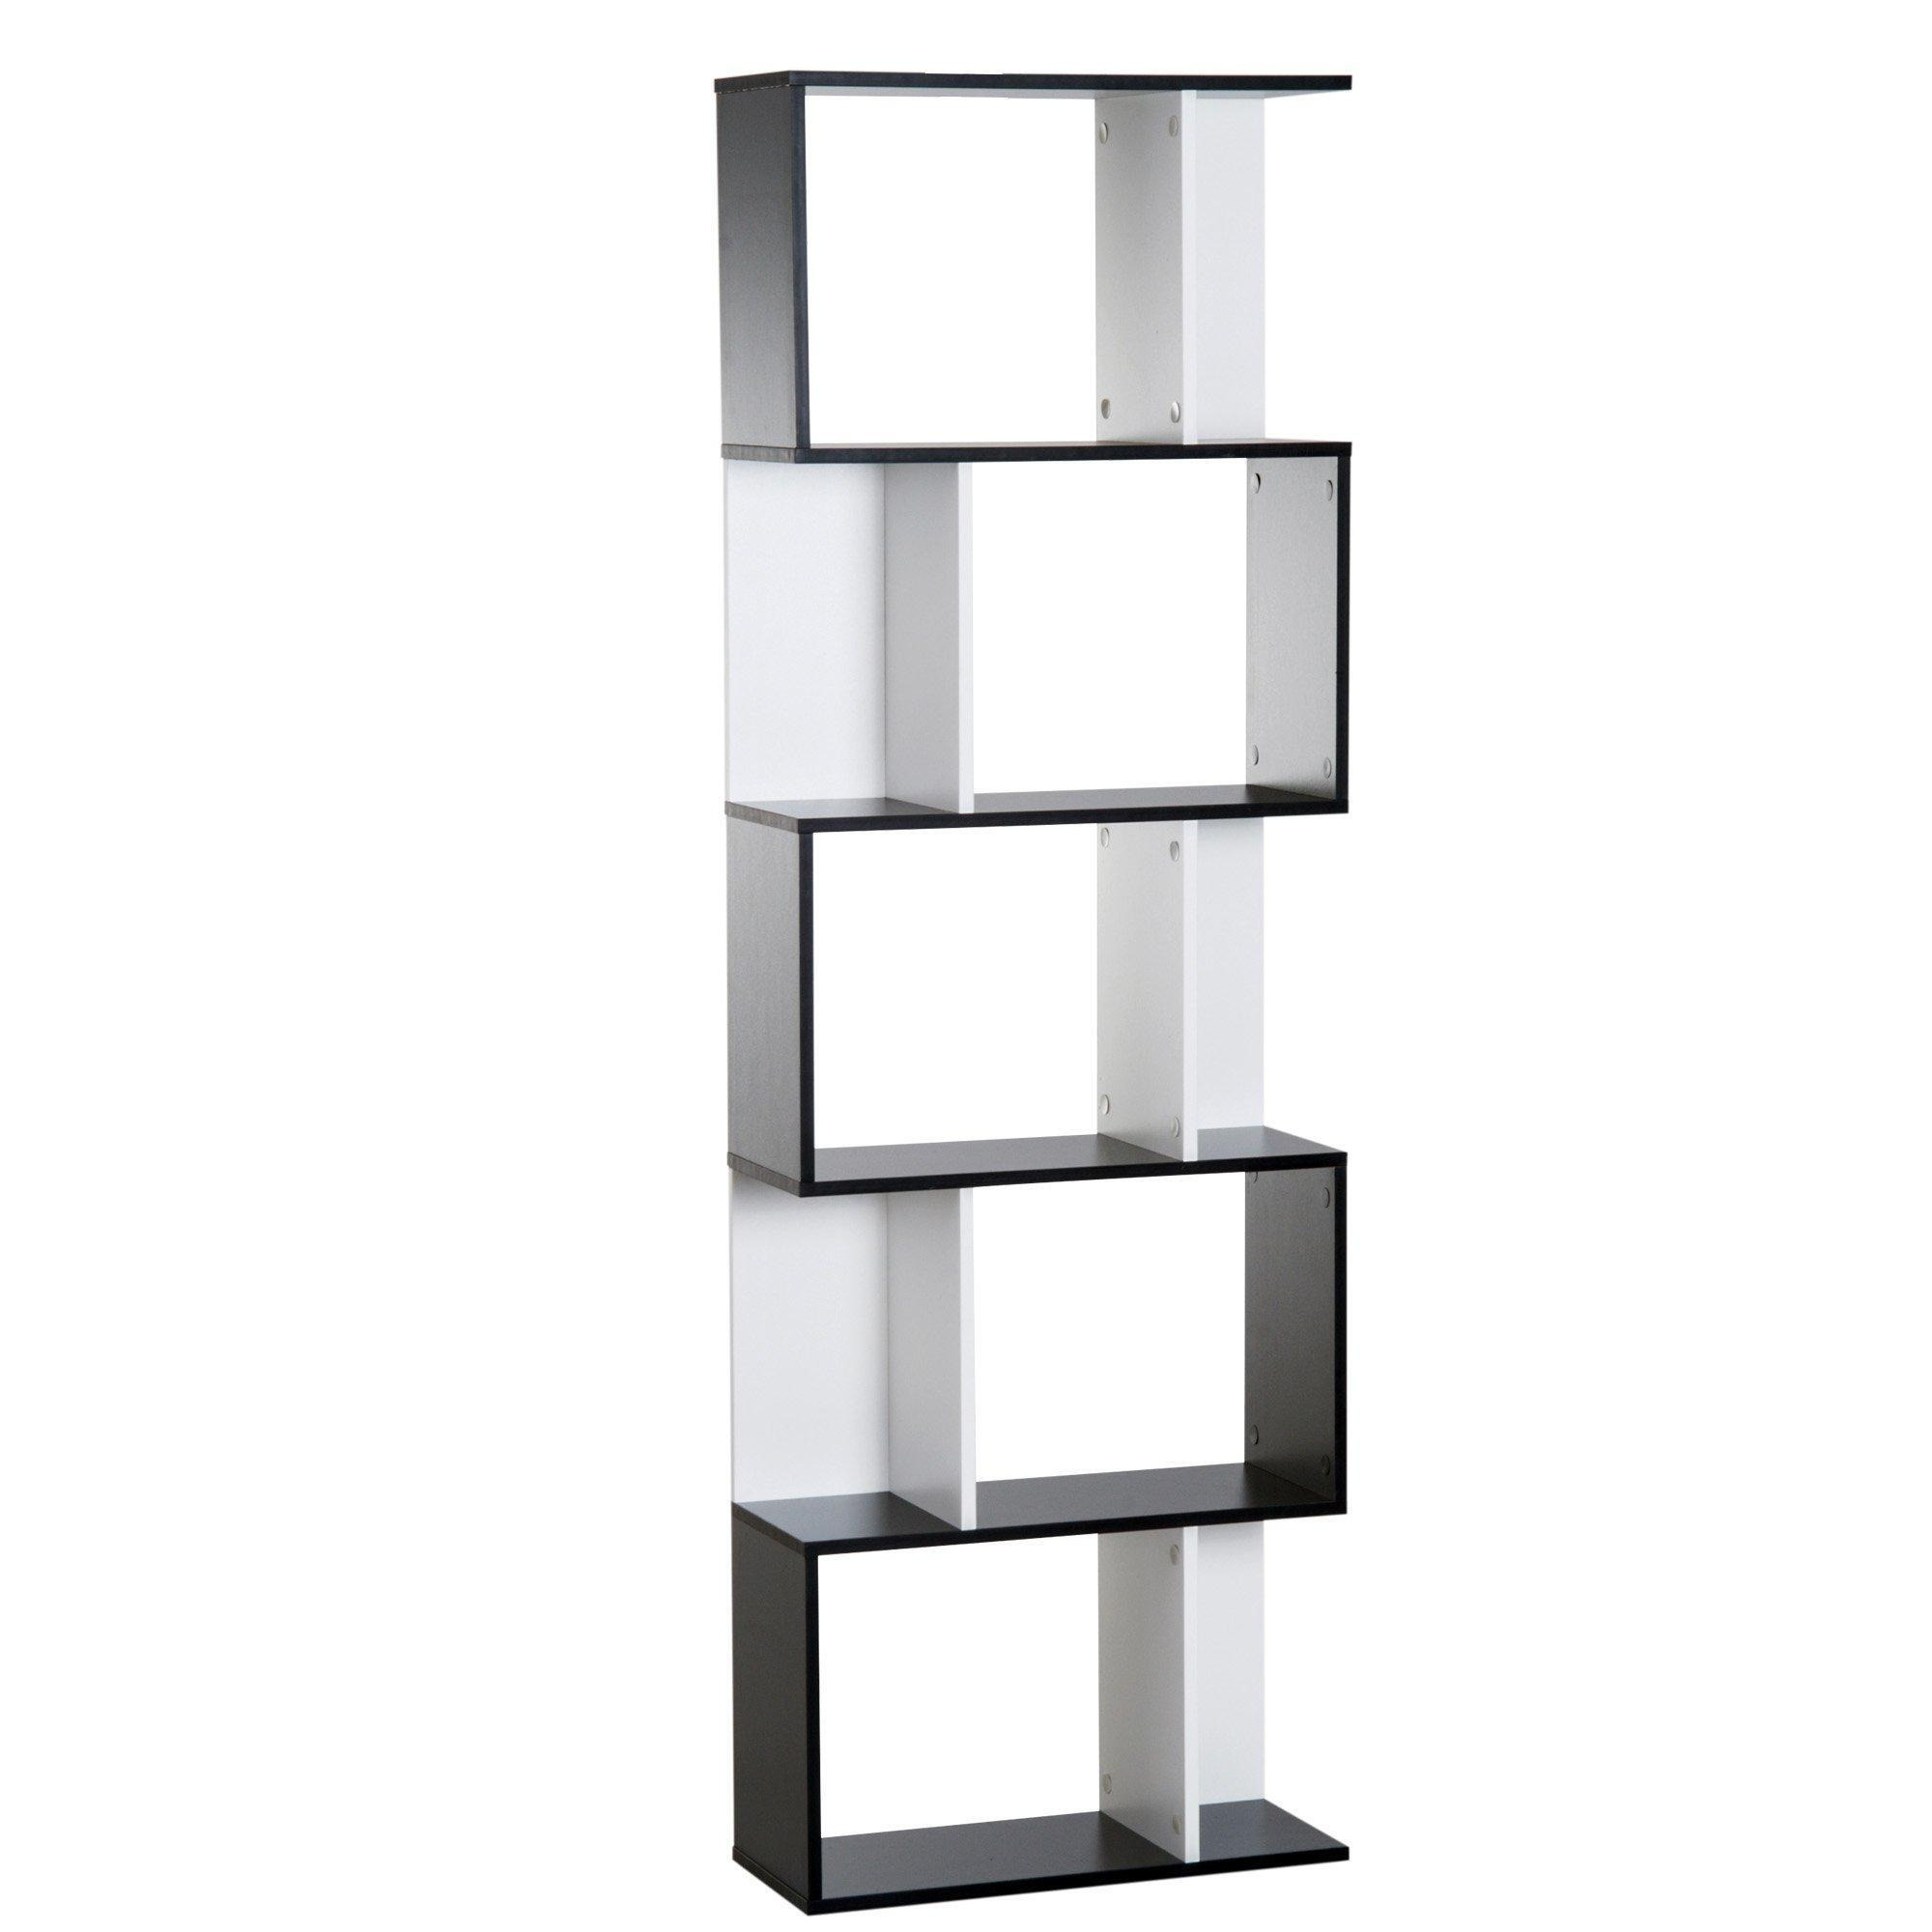 5 tier Bookcase Storage Display Shelving S Shape design Unit Divider - image 1